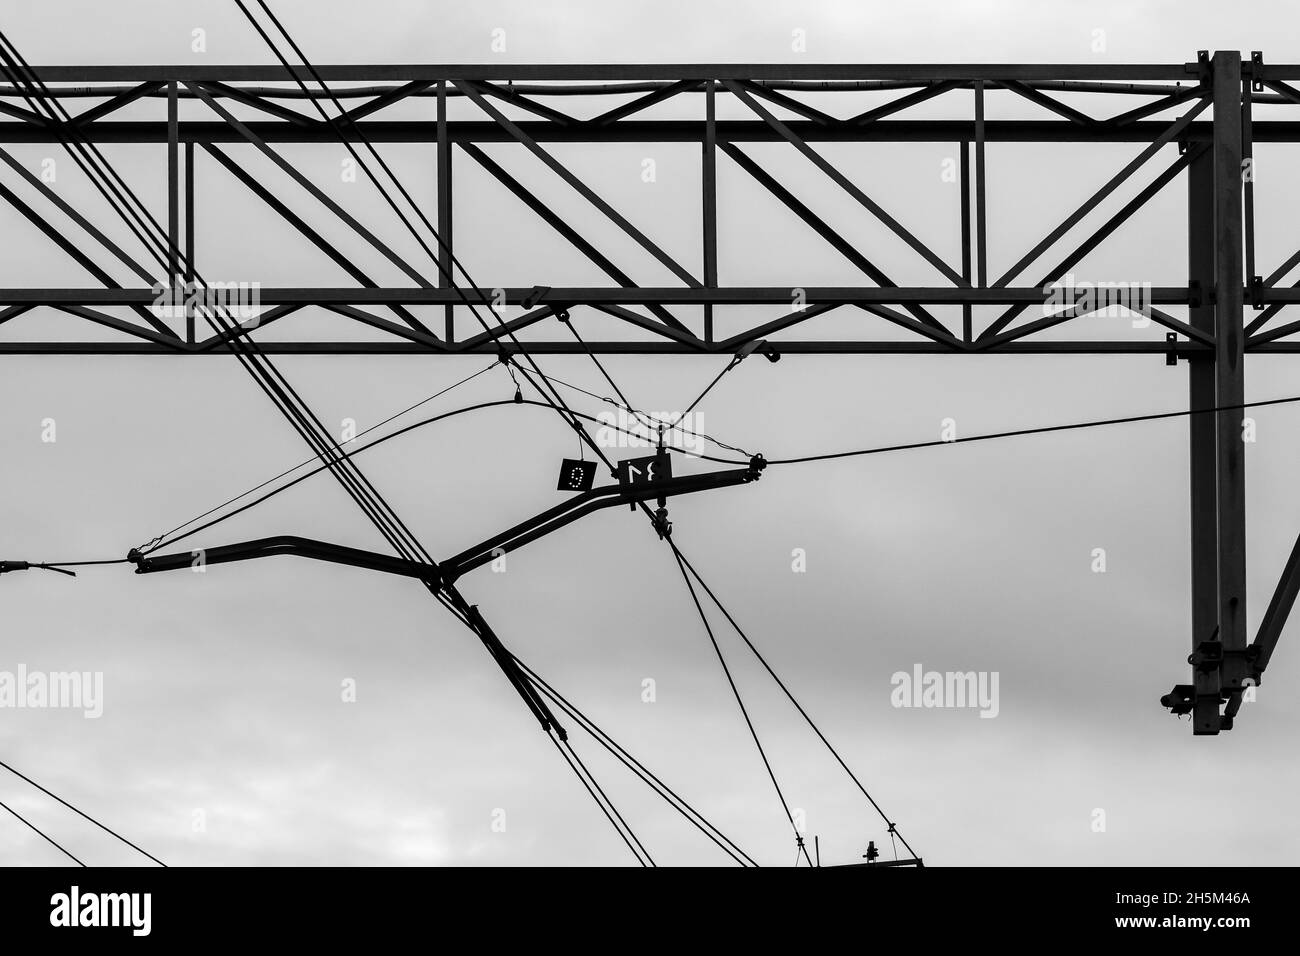 Lignes aériennes de chemin de fer et structures de maintien sous ciel nuageux, photo de fond noir et blanc Banque D'Images